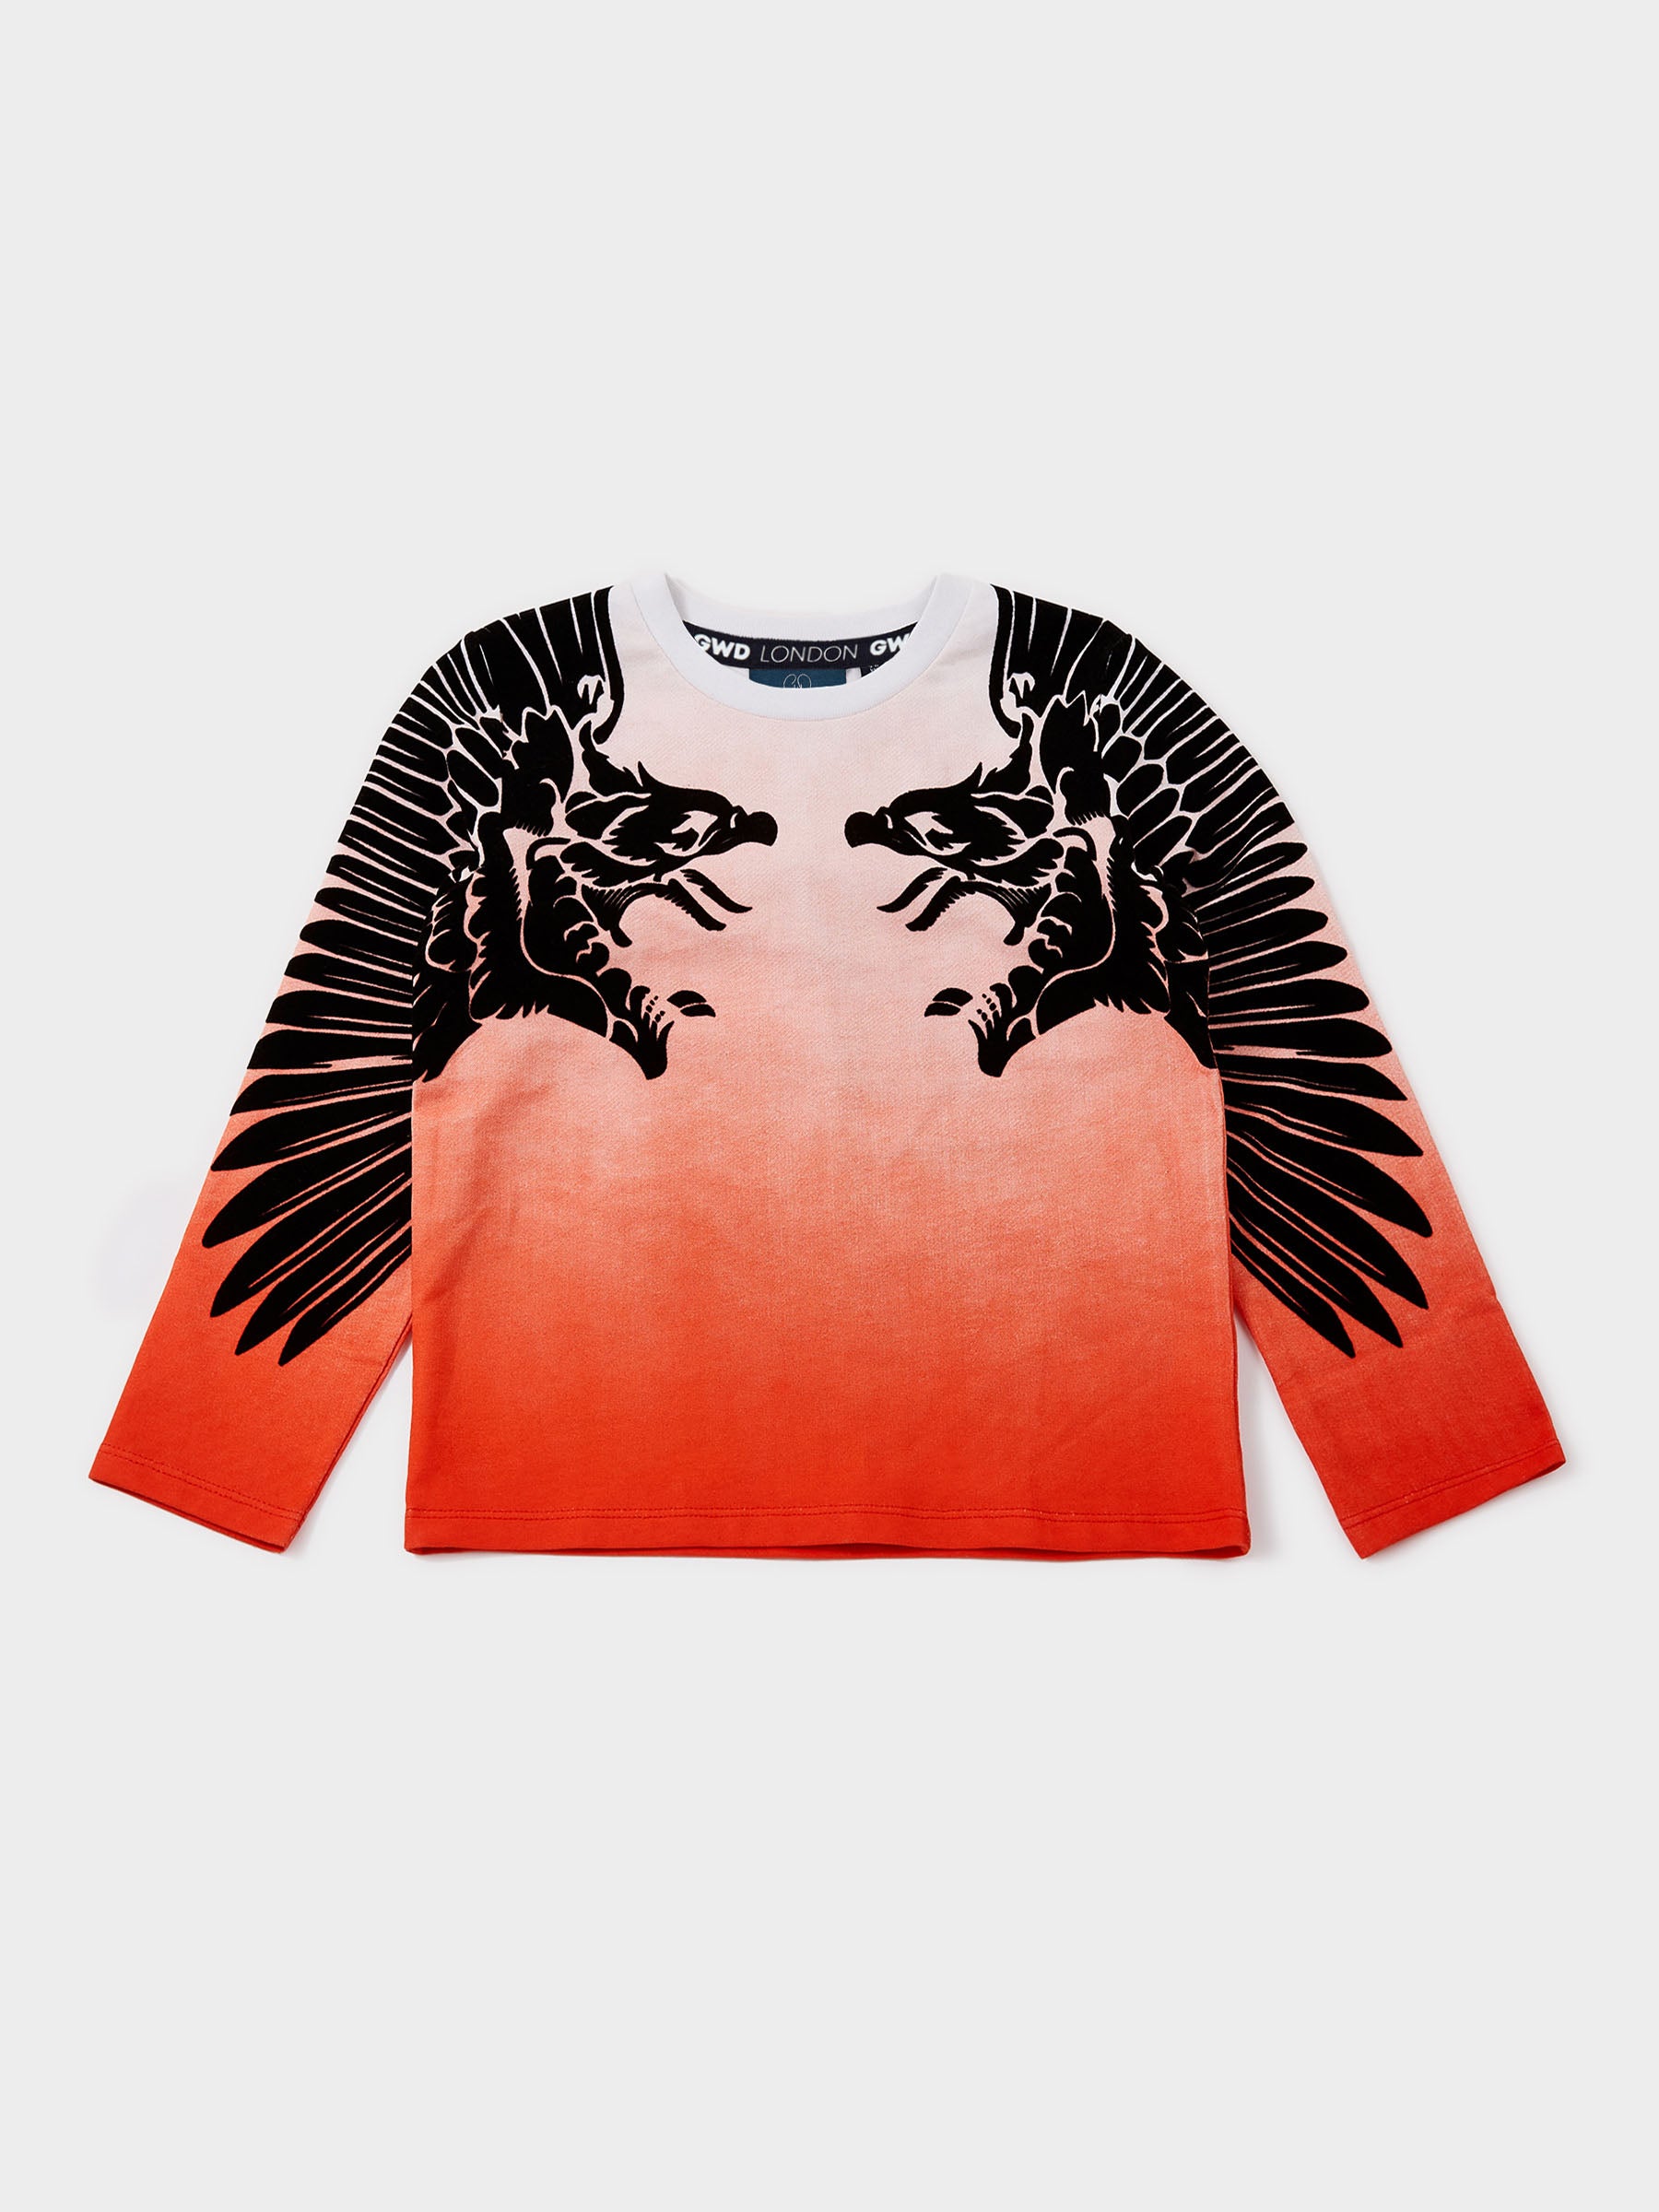 Firebird Long Sleeve T-Shirt